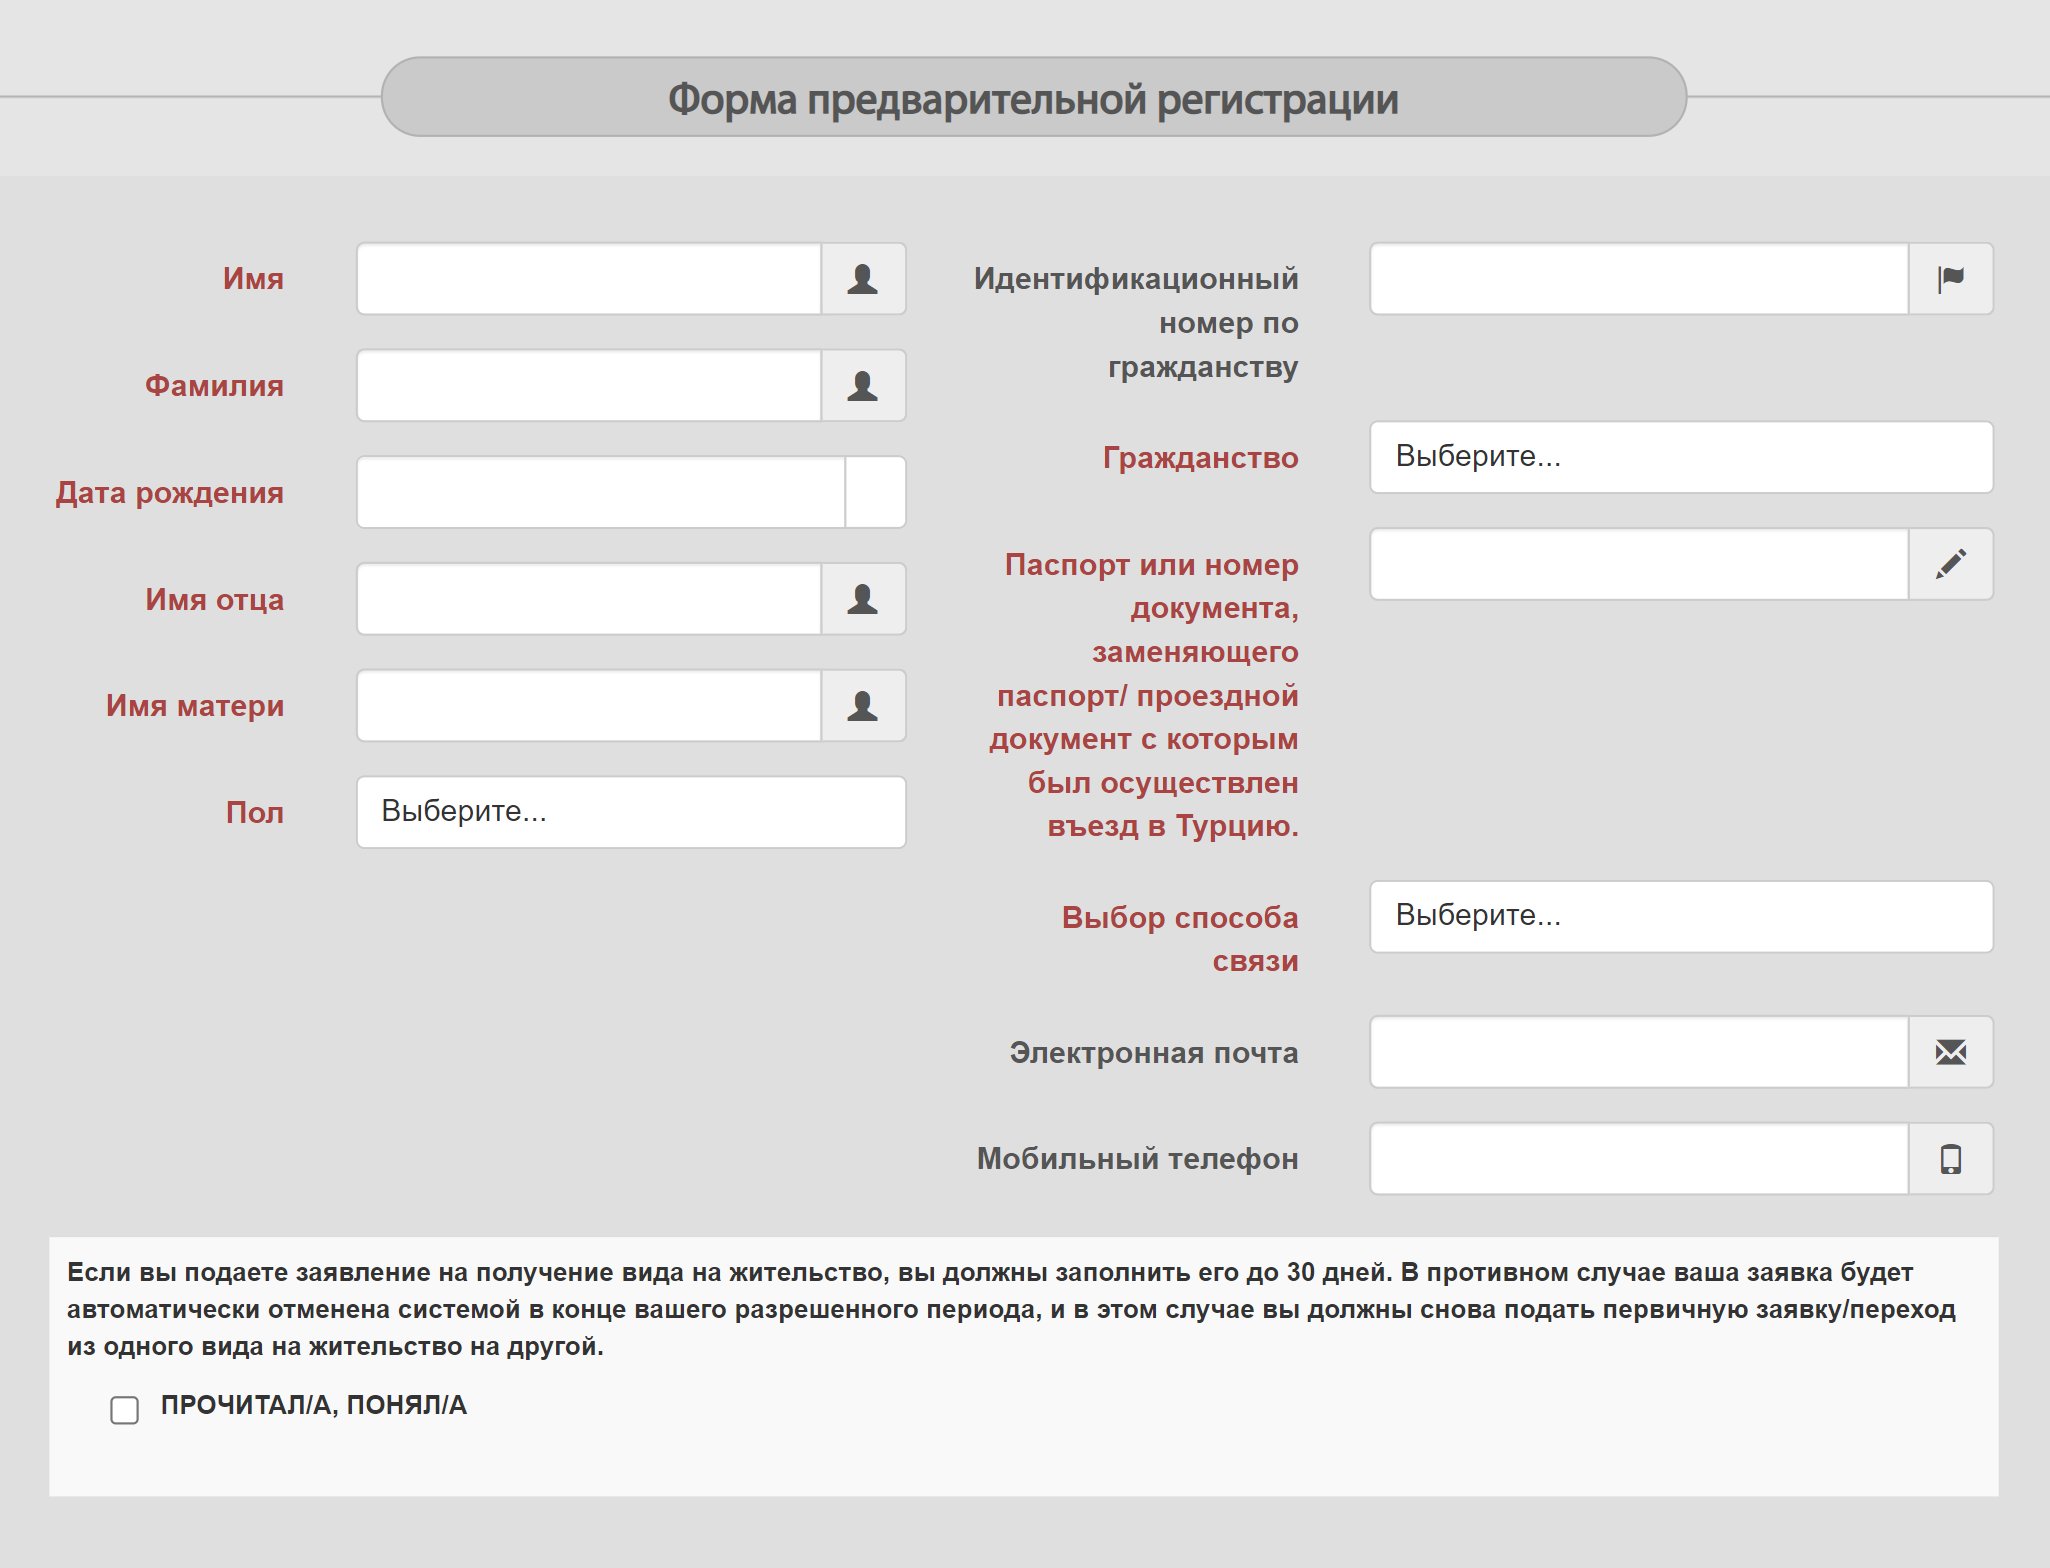 Сайт и форма заявки были доступны на русском языке